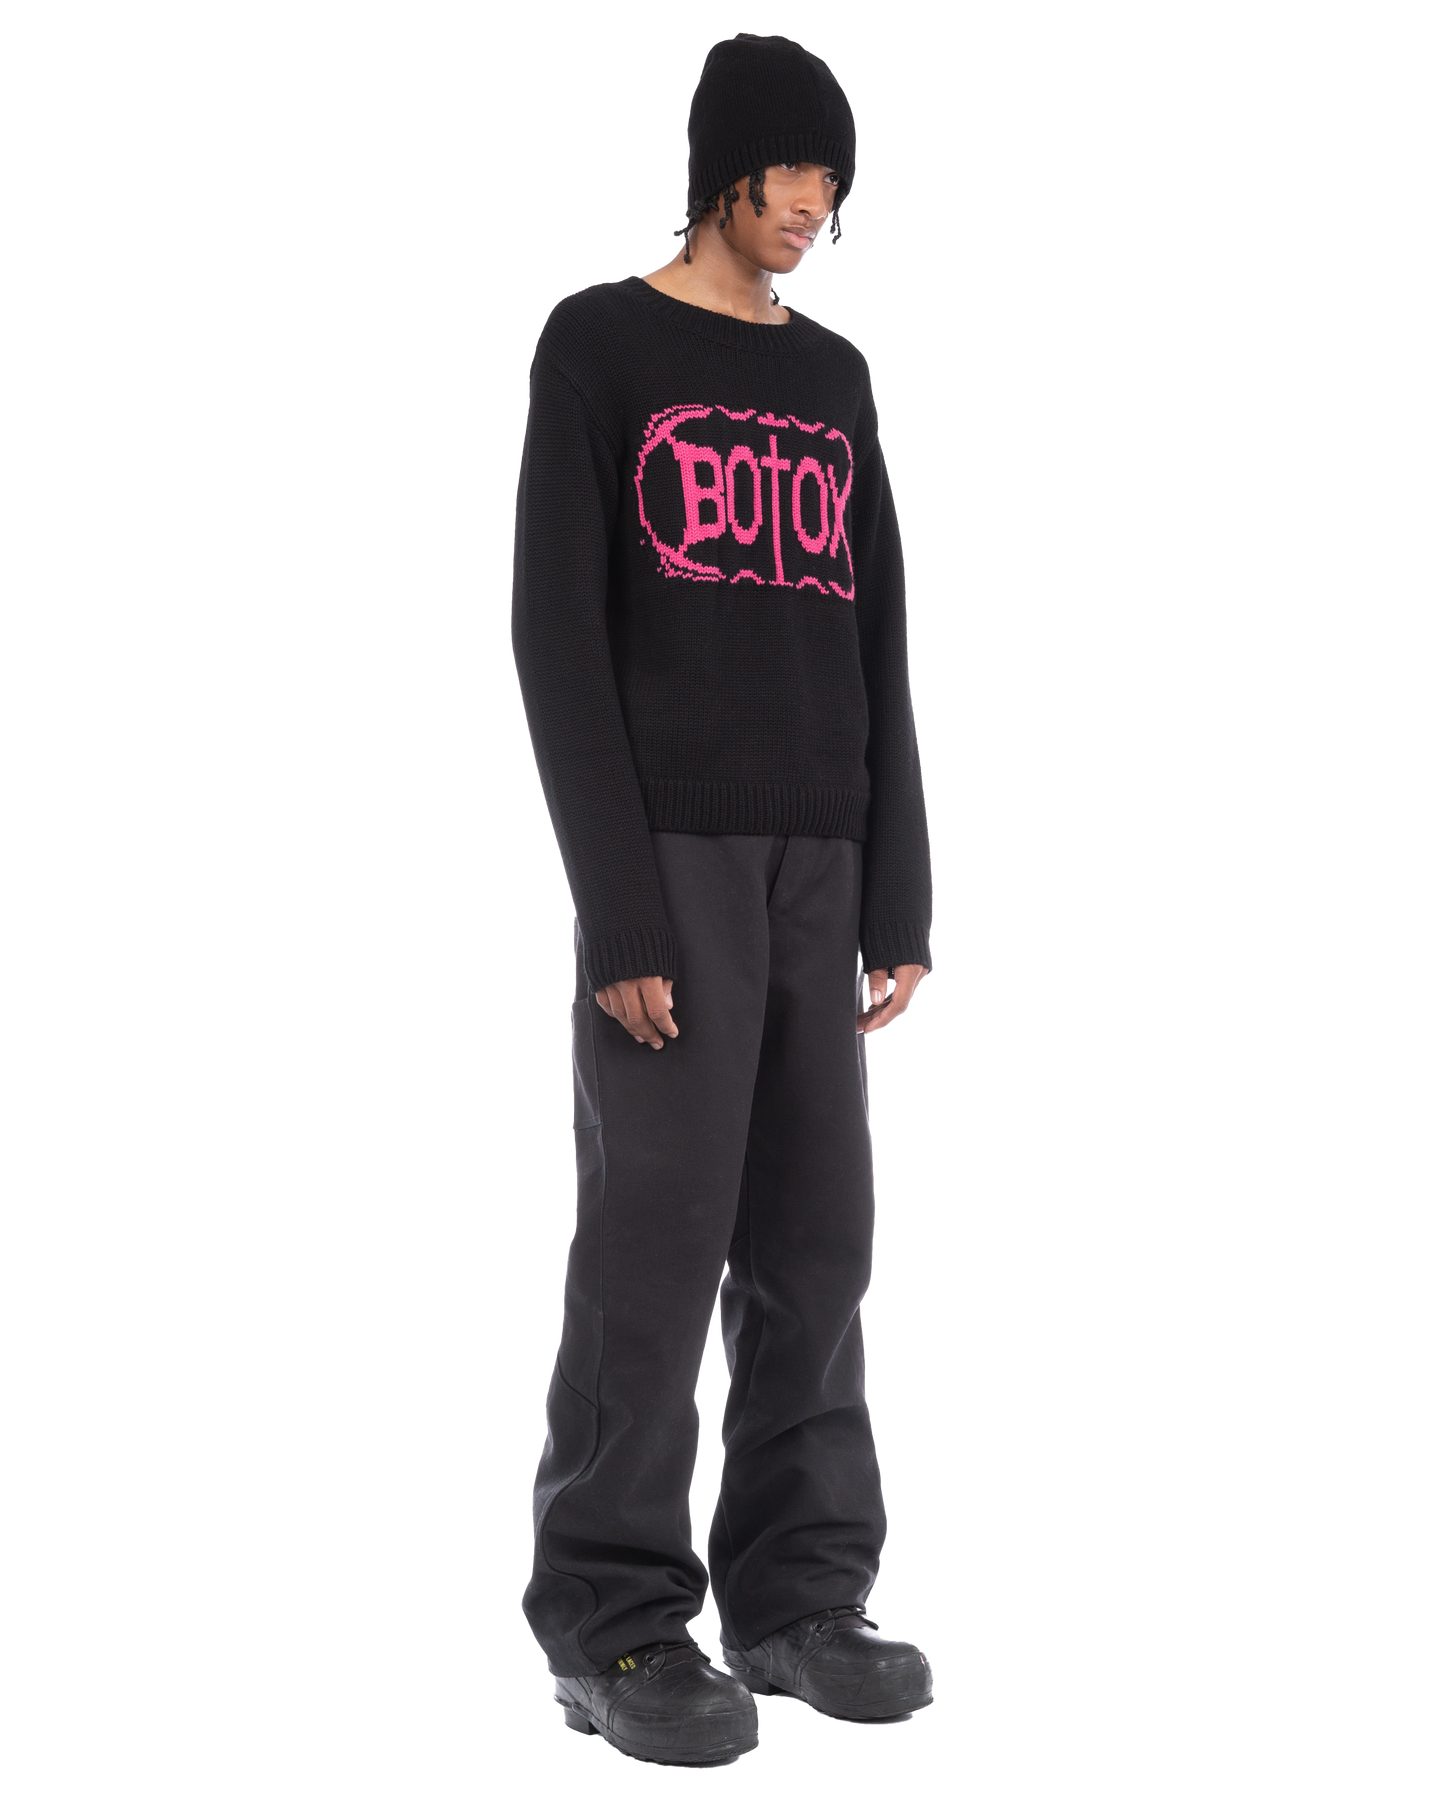 Botox sweater (black/pink)